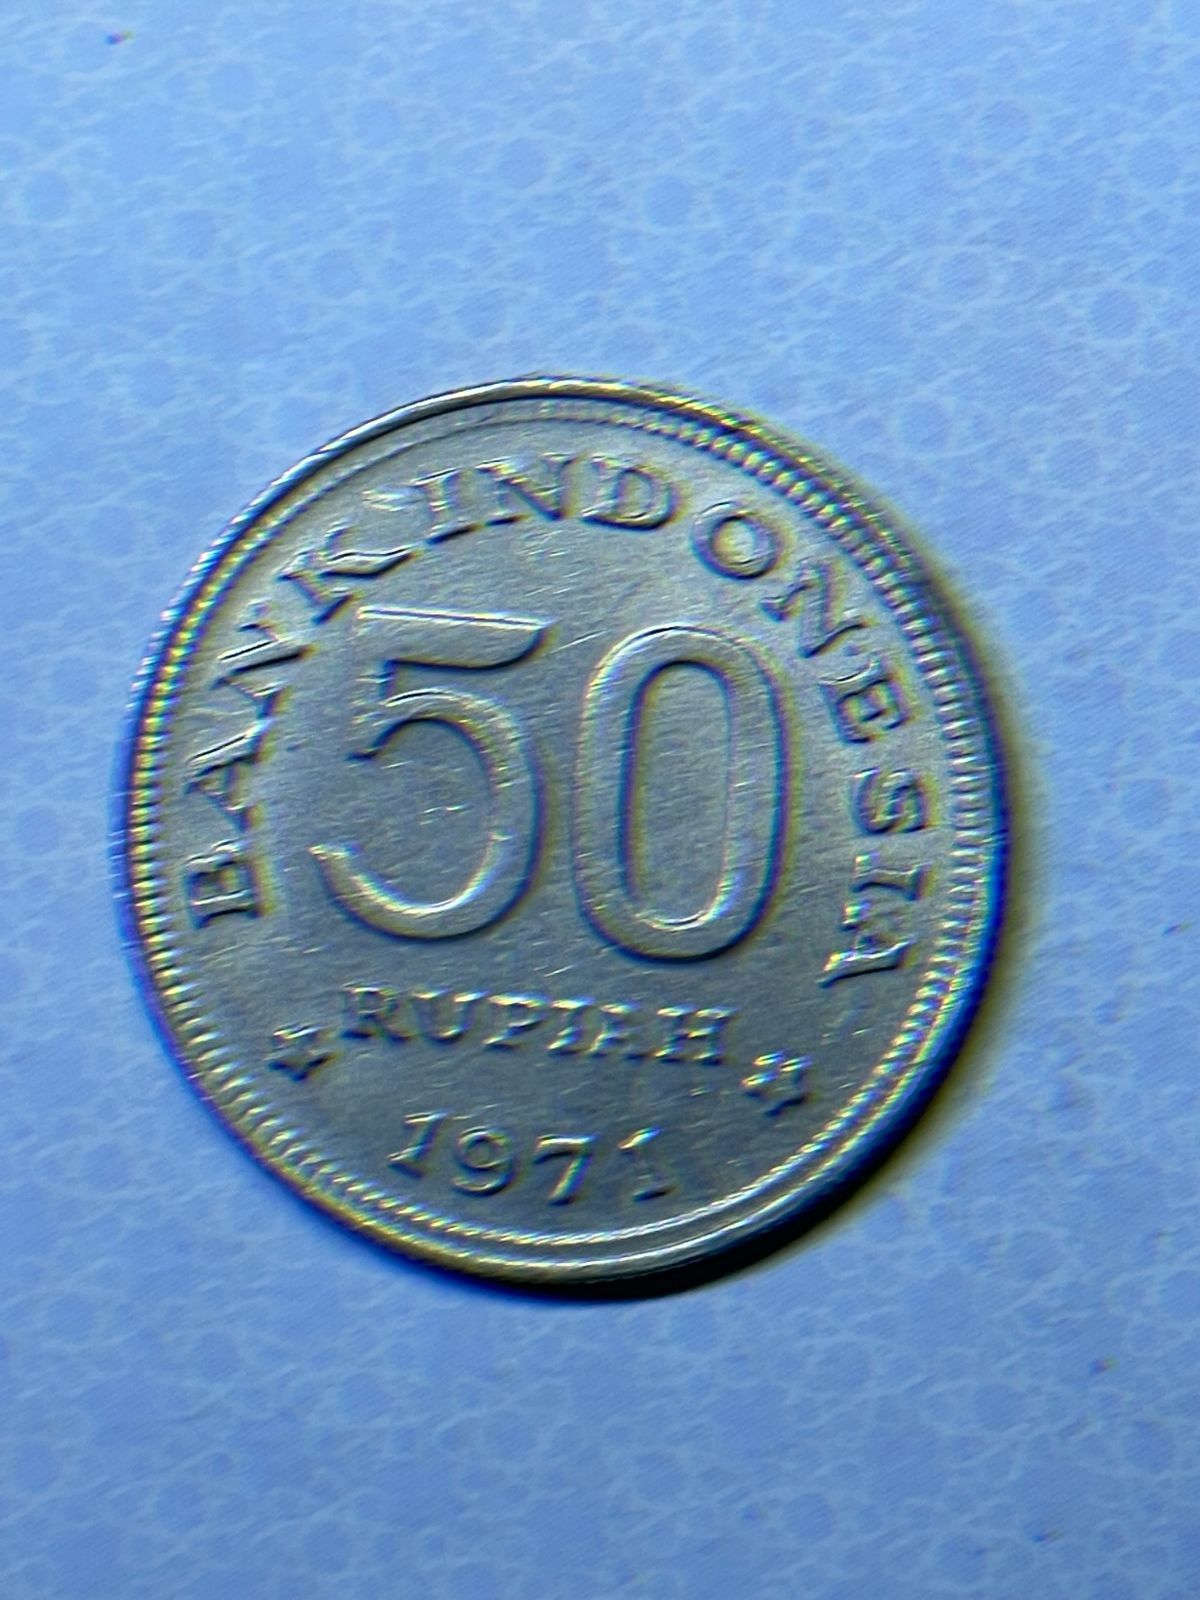 インドネシア50ルピア - 旧貨幣